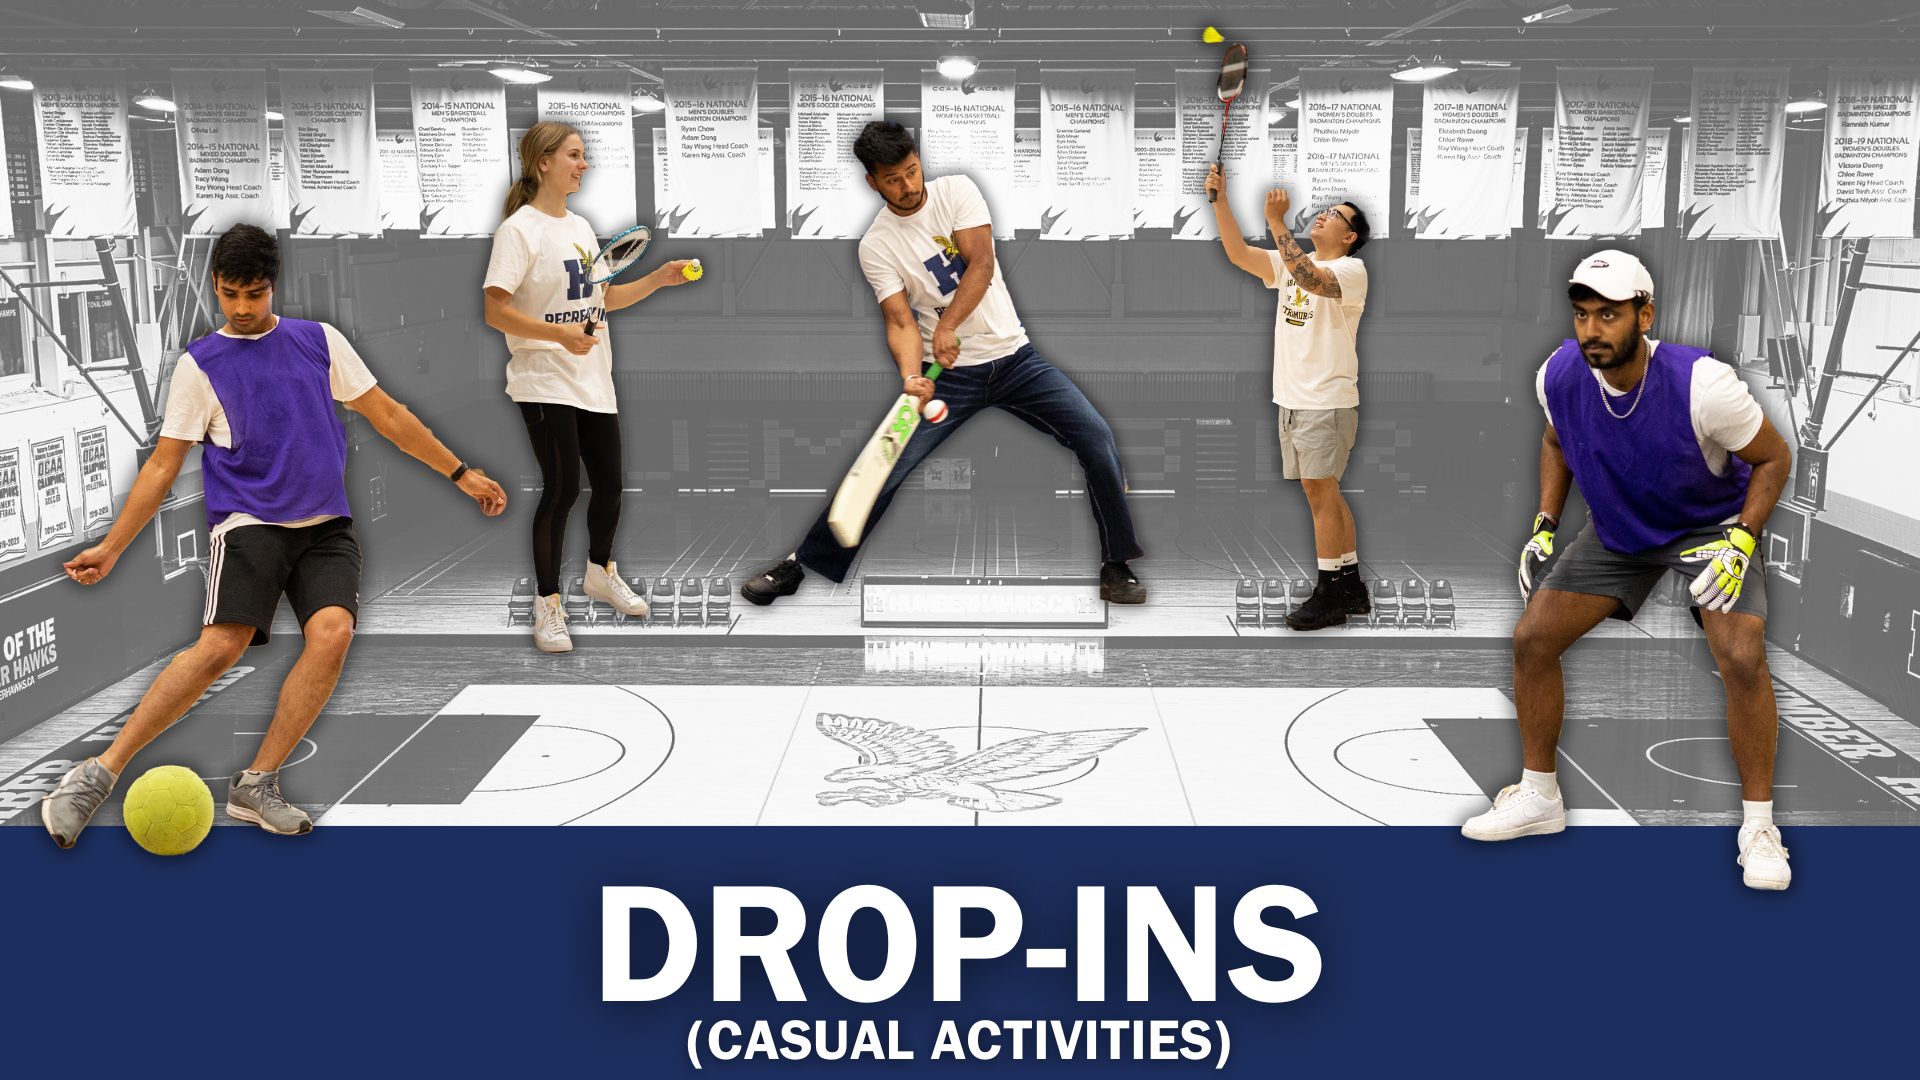 Drop-ins - Casual Activities